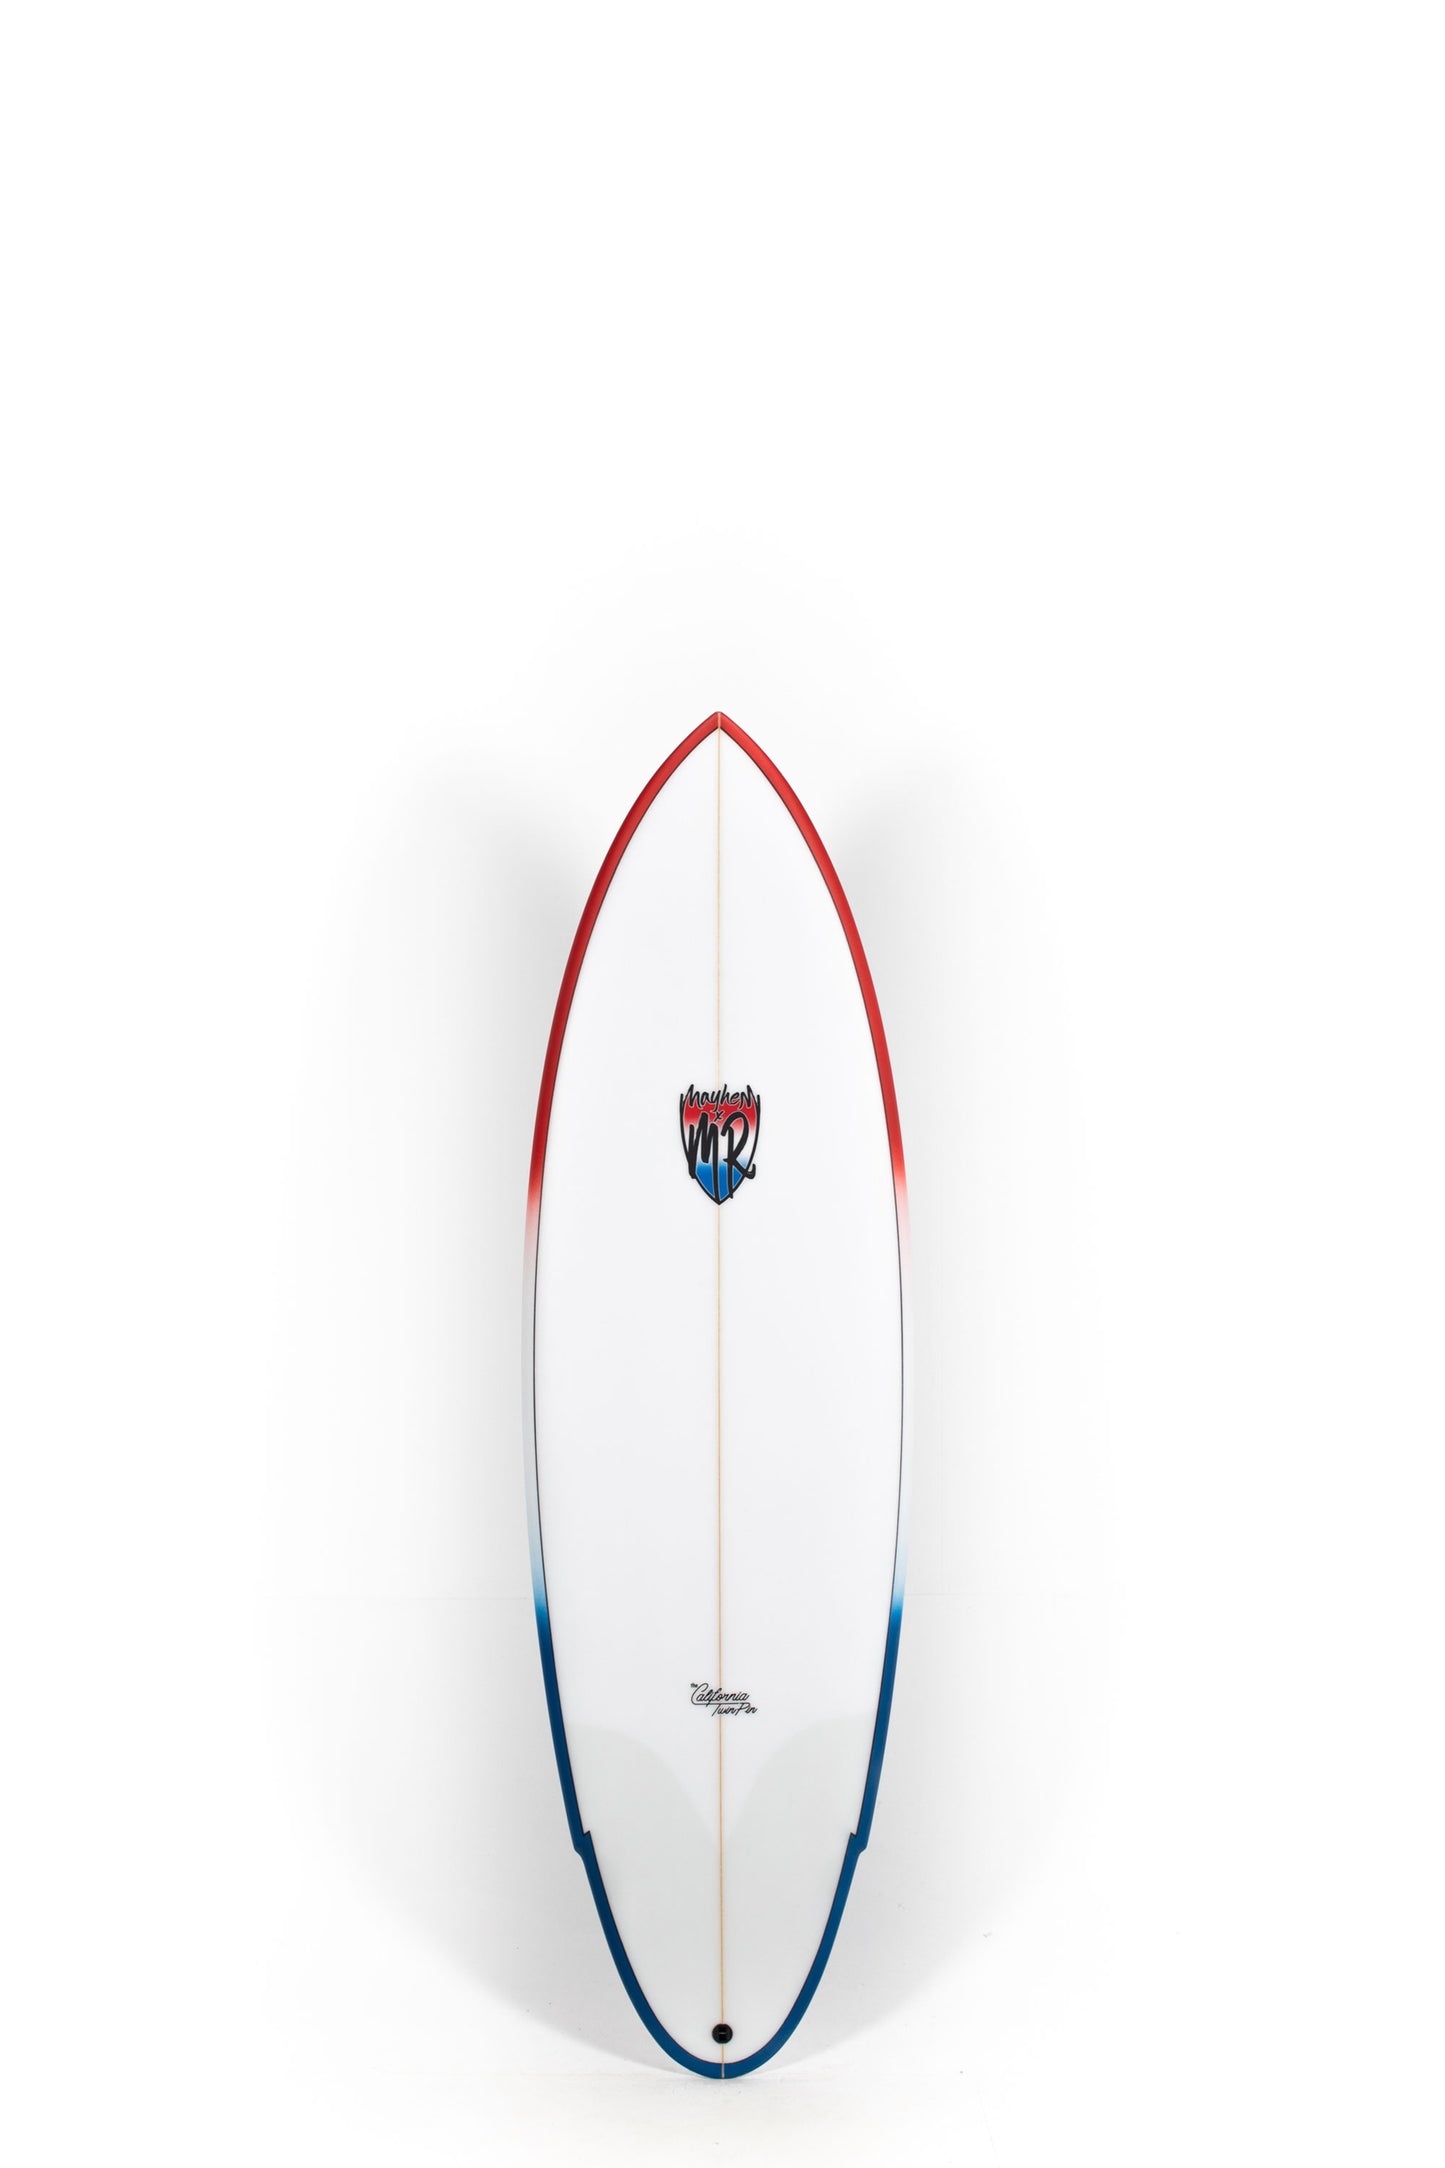 Pukas Surf Shop Lost Surfboards - CALIFORNIA TWIN PIN by Matt Biolos - 6'0" x 21 x 2,63 x 36L - MM00604